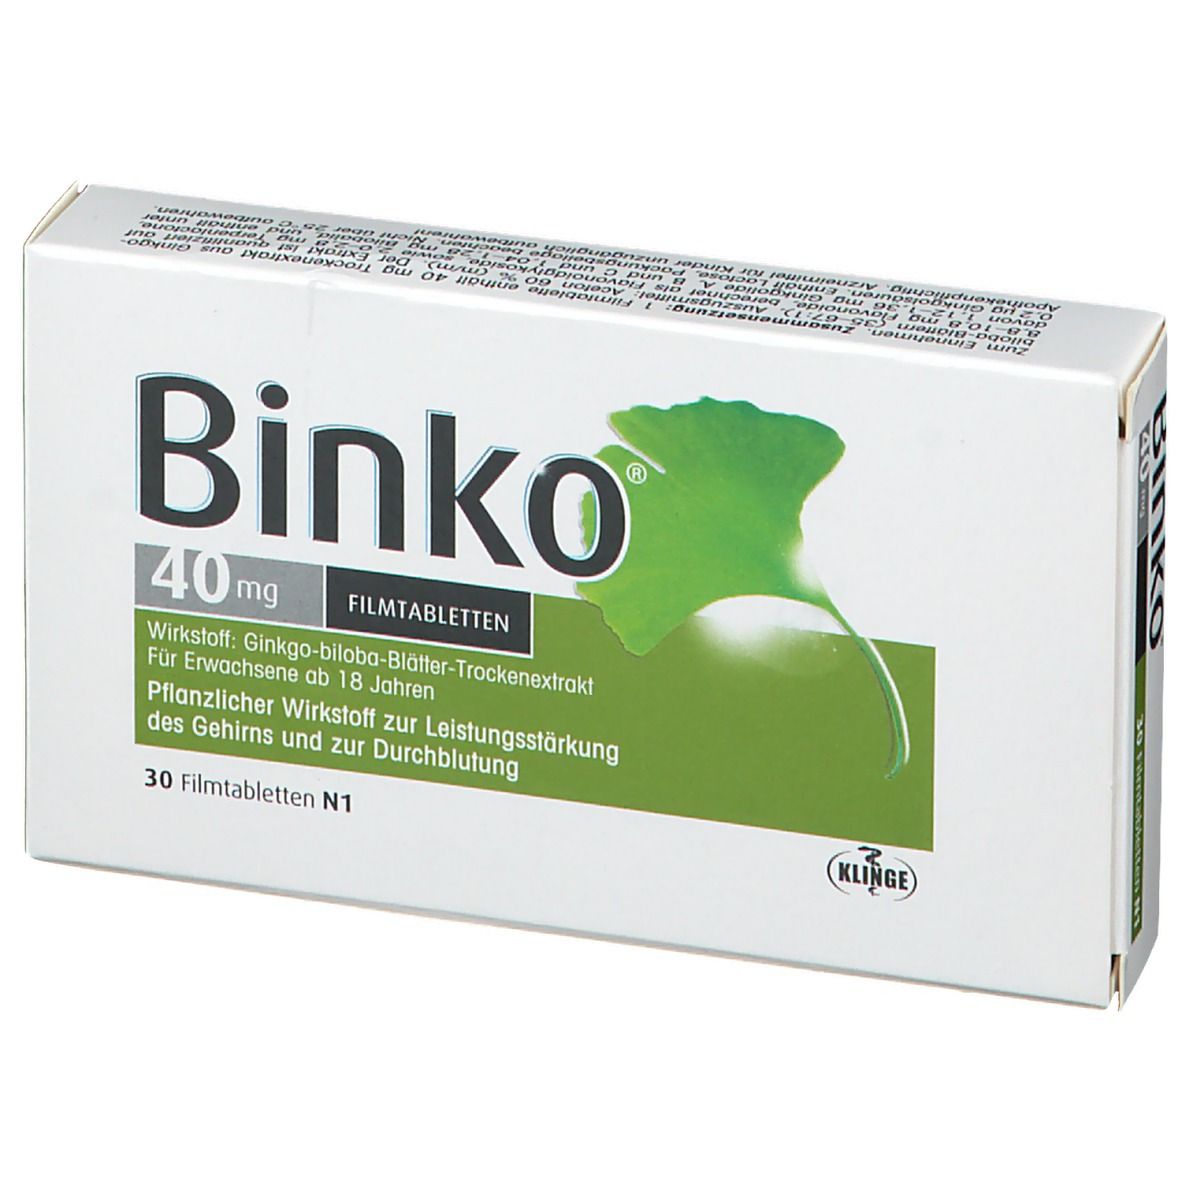 Binko® 40 mg